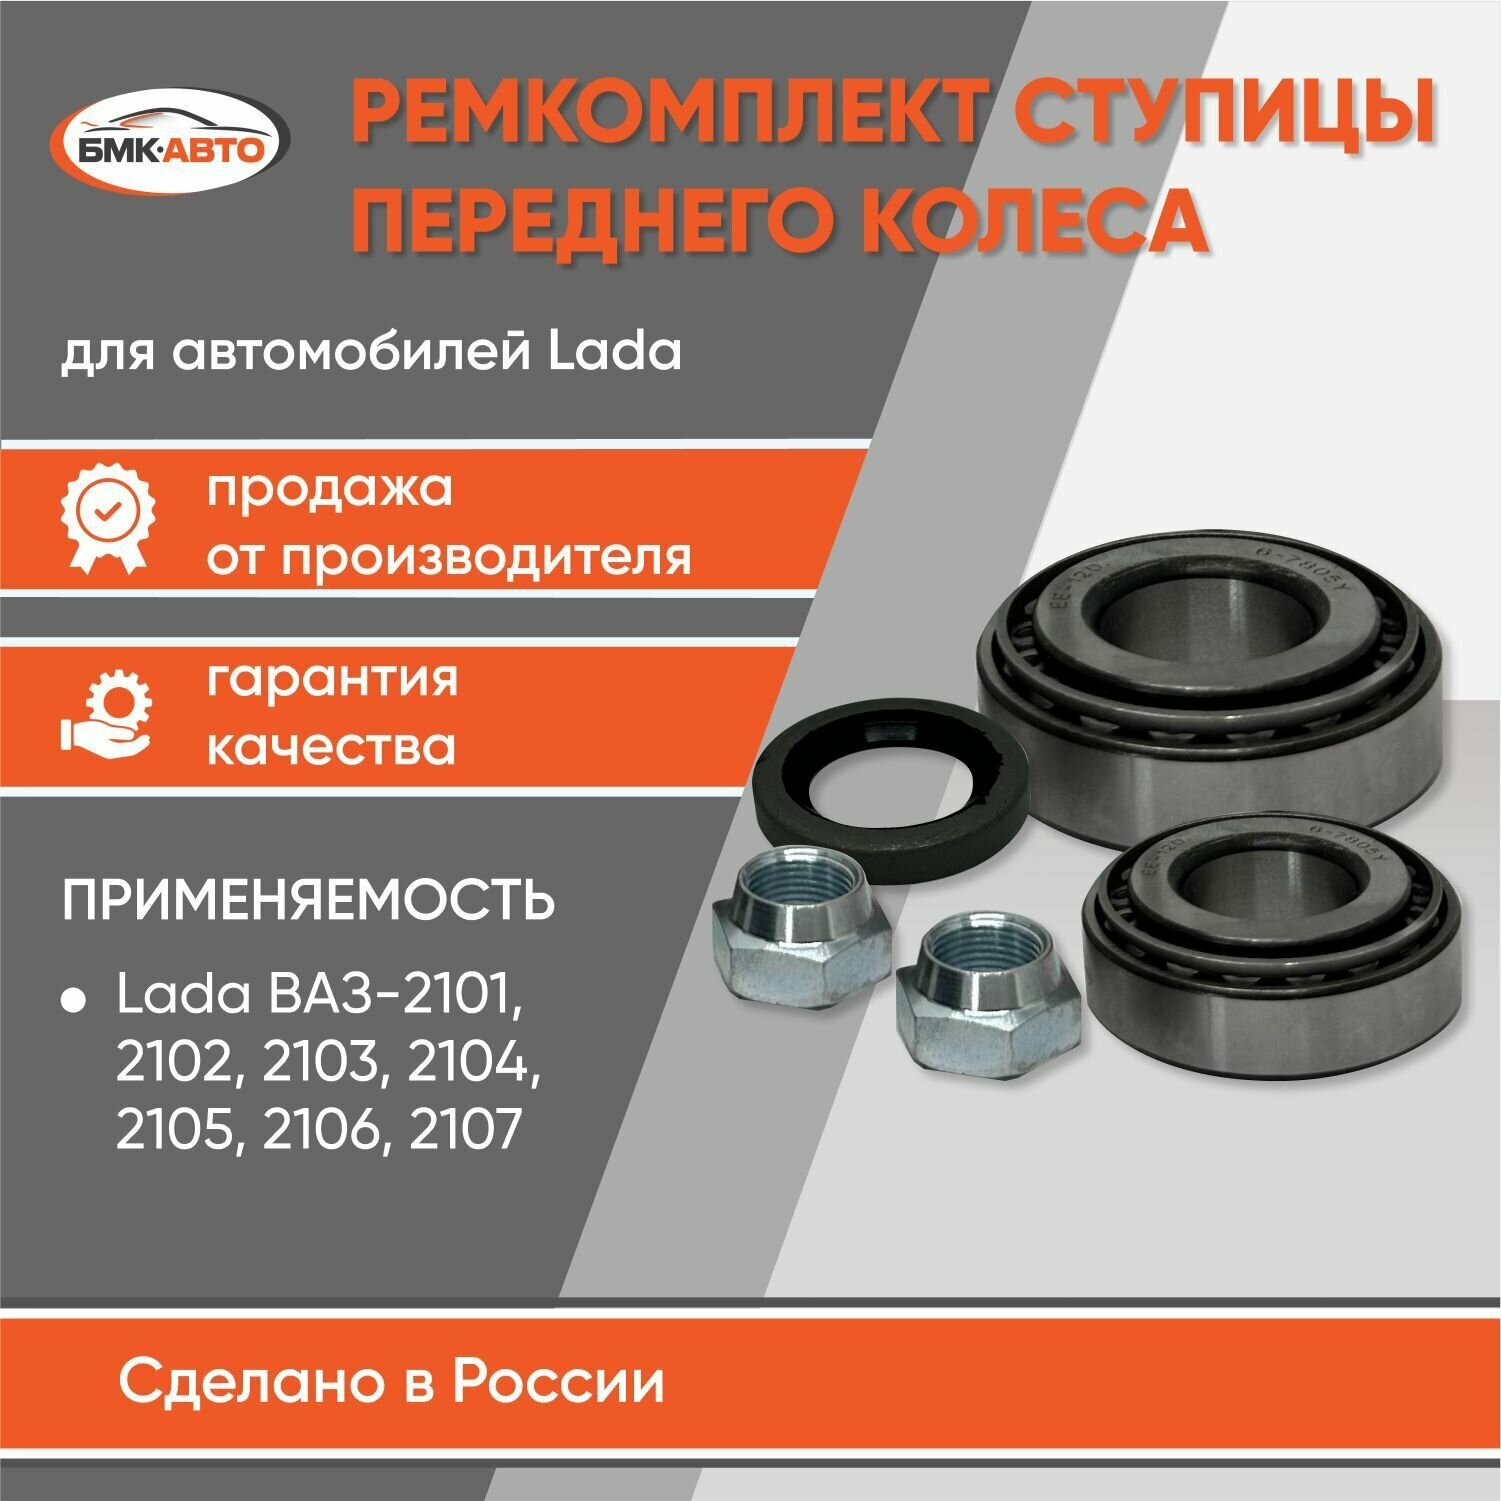 Ремкомплект ступицы переднего колеса для ВАЗ 2101 / 2102 / 2103 / 2104 / 2105 /2106 / 2107 бмк-авто